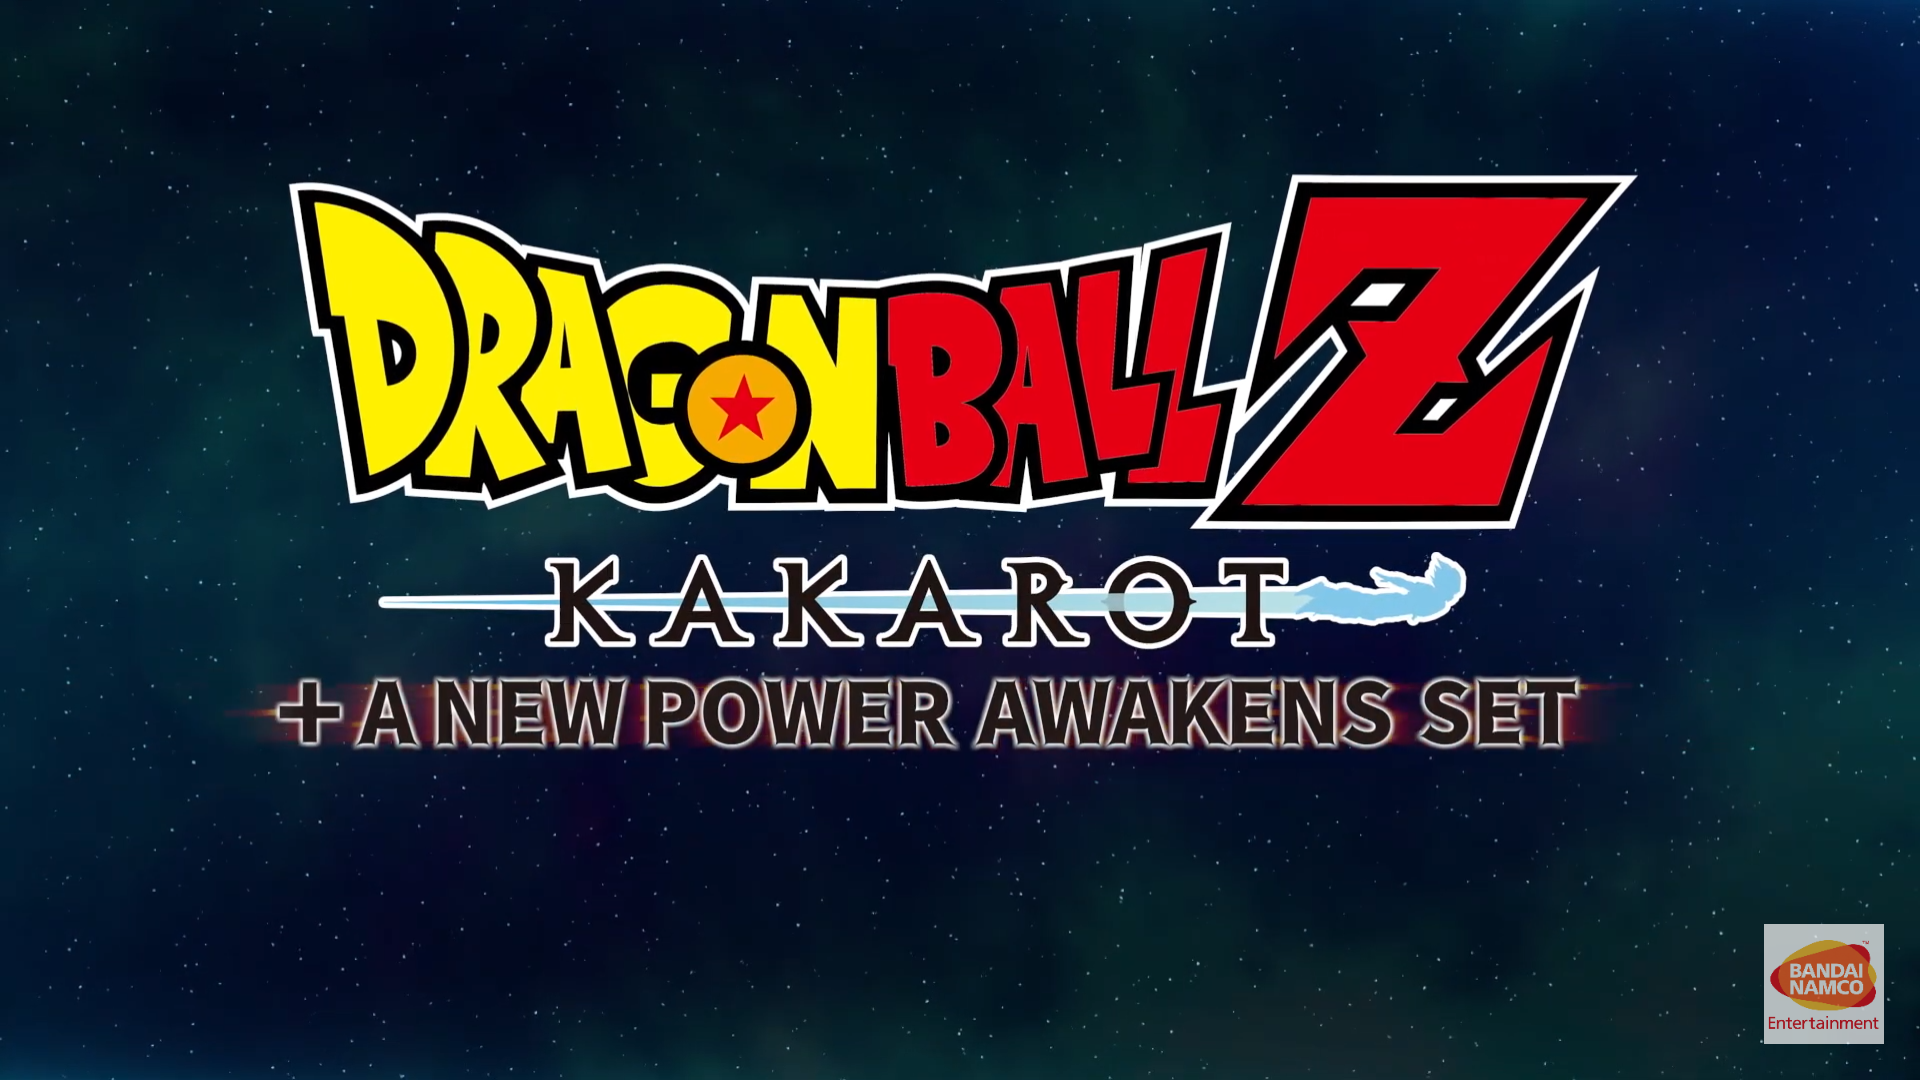 DRAGON BALL Z: KAKAROT + A NEW POWER AWAKENS SET for Nintendo